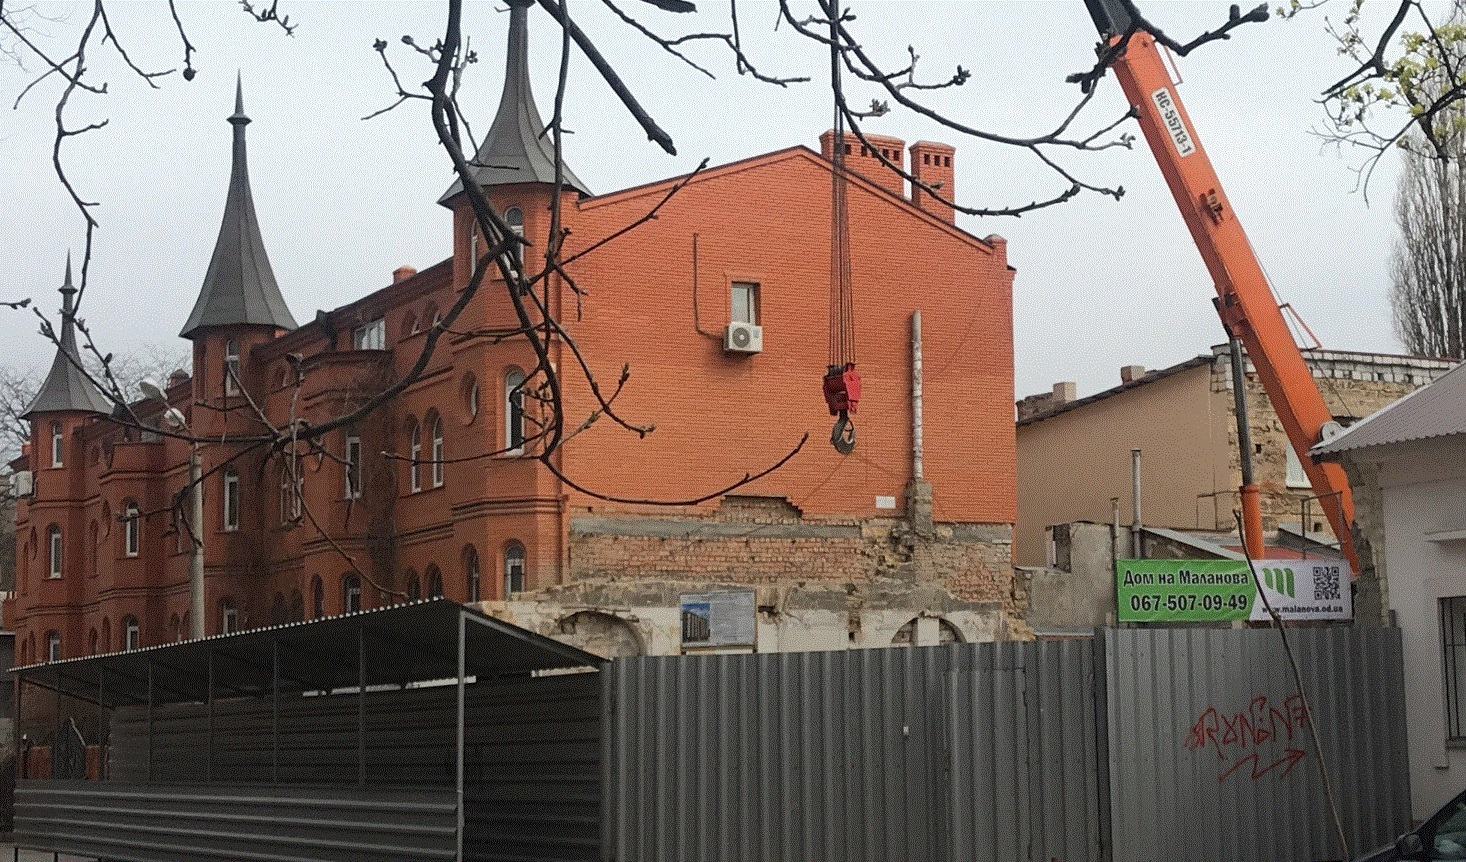 Ход строительства ЖК Дом на Маланова, март, 2020 год